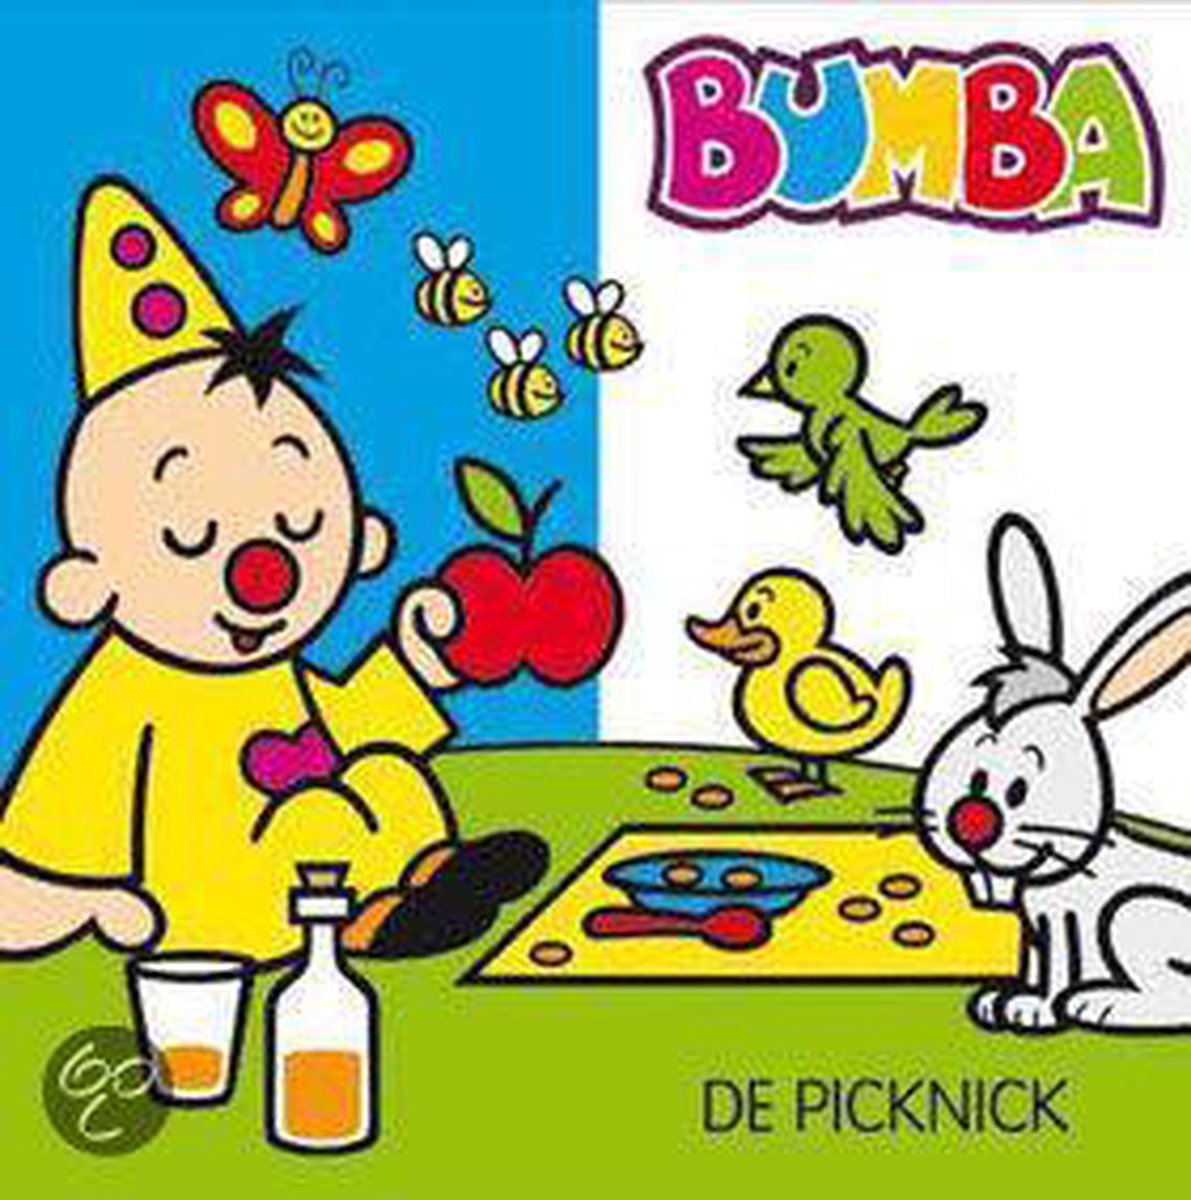 Bumba Kartonboekje De Picknick